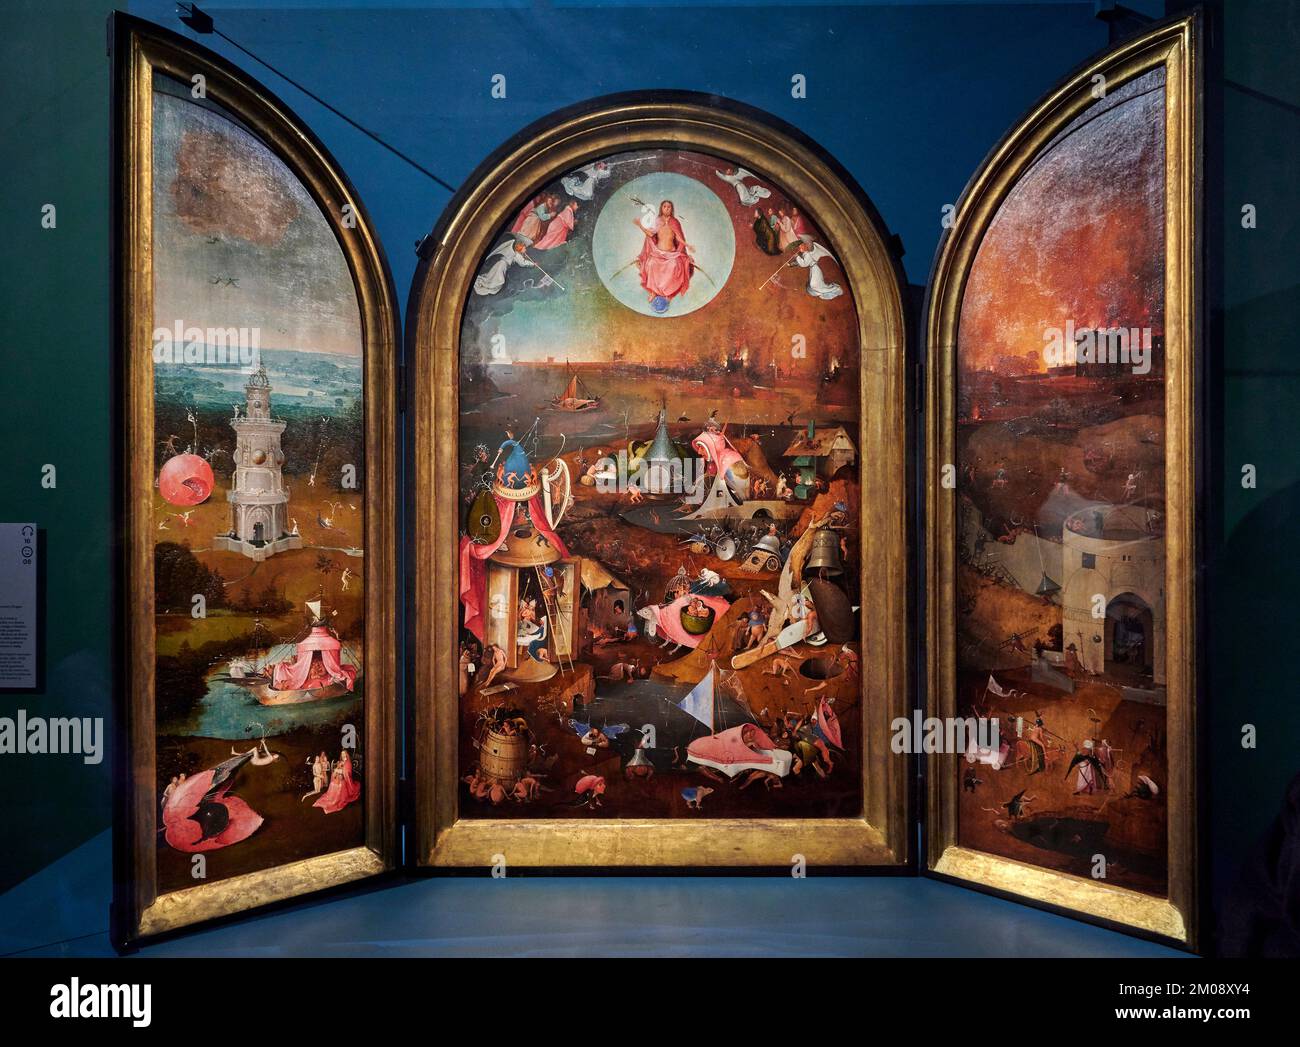 Giudizio finale    - olio su tavola  - Jheronimus Bosch - 1500 - Bruges, Musee Brugge Groeningemuseum Stock Photo